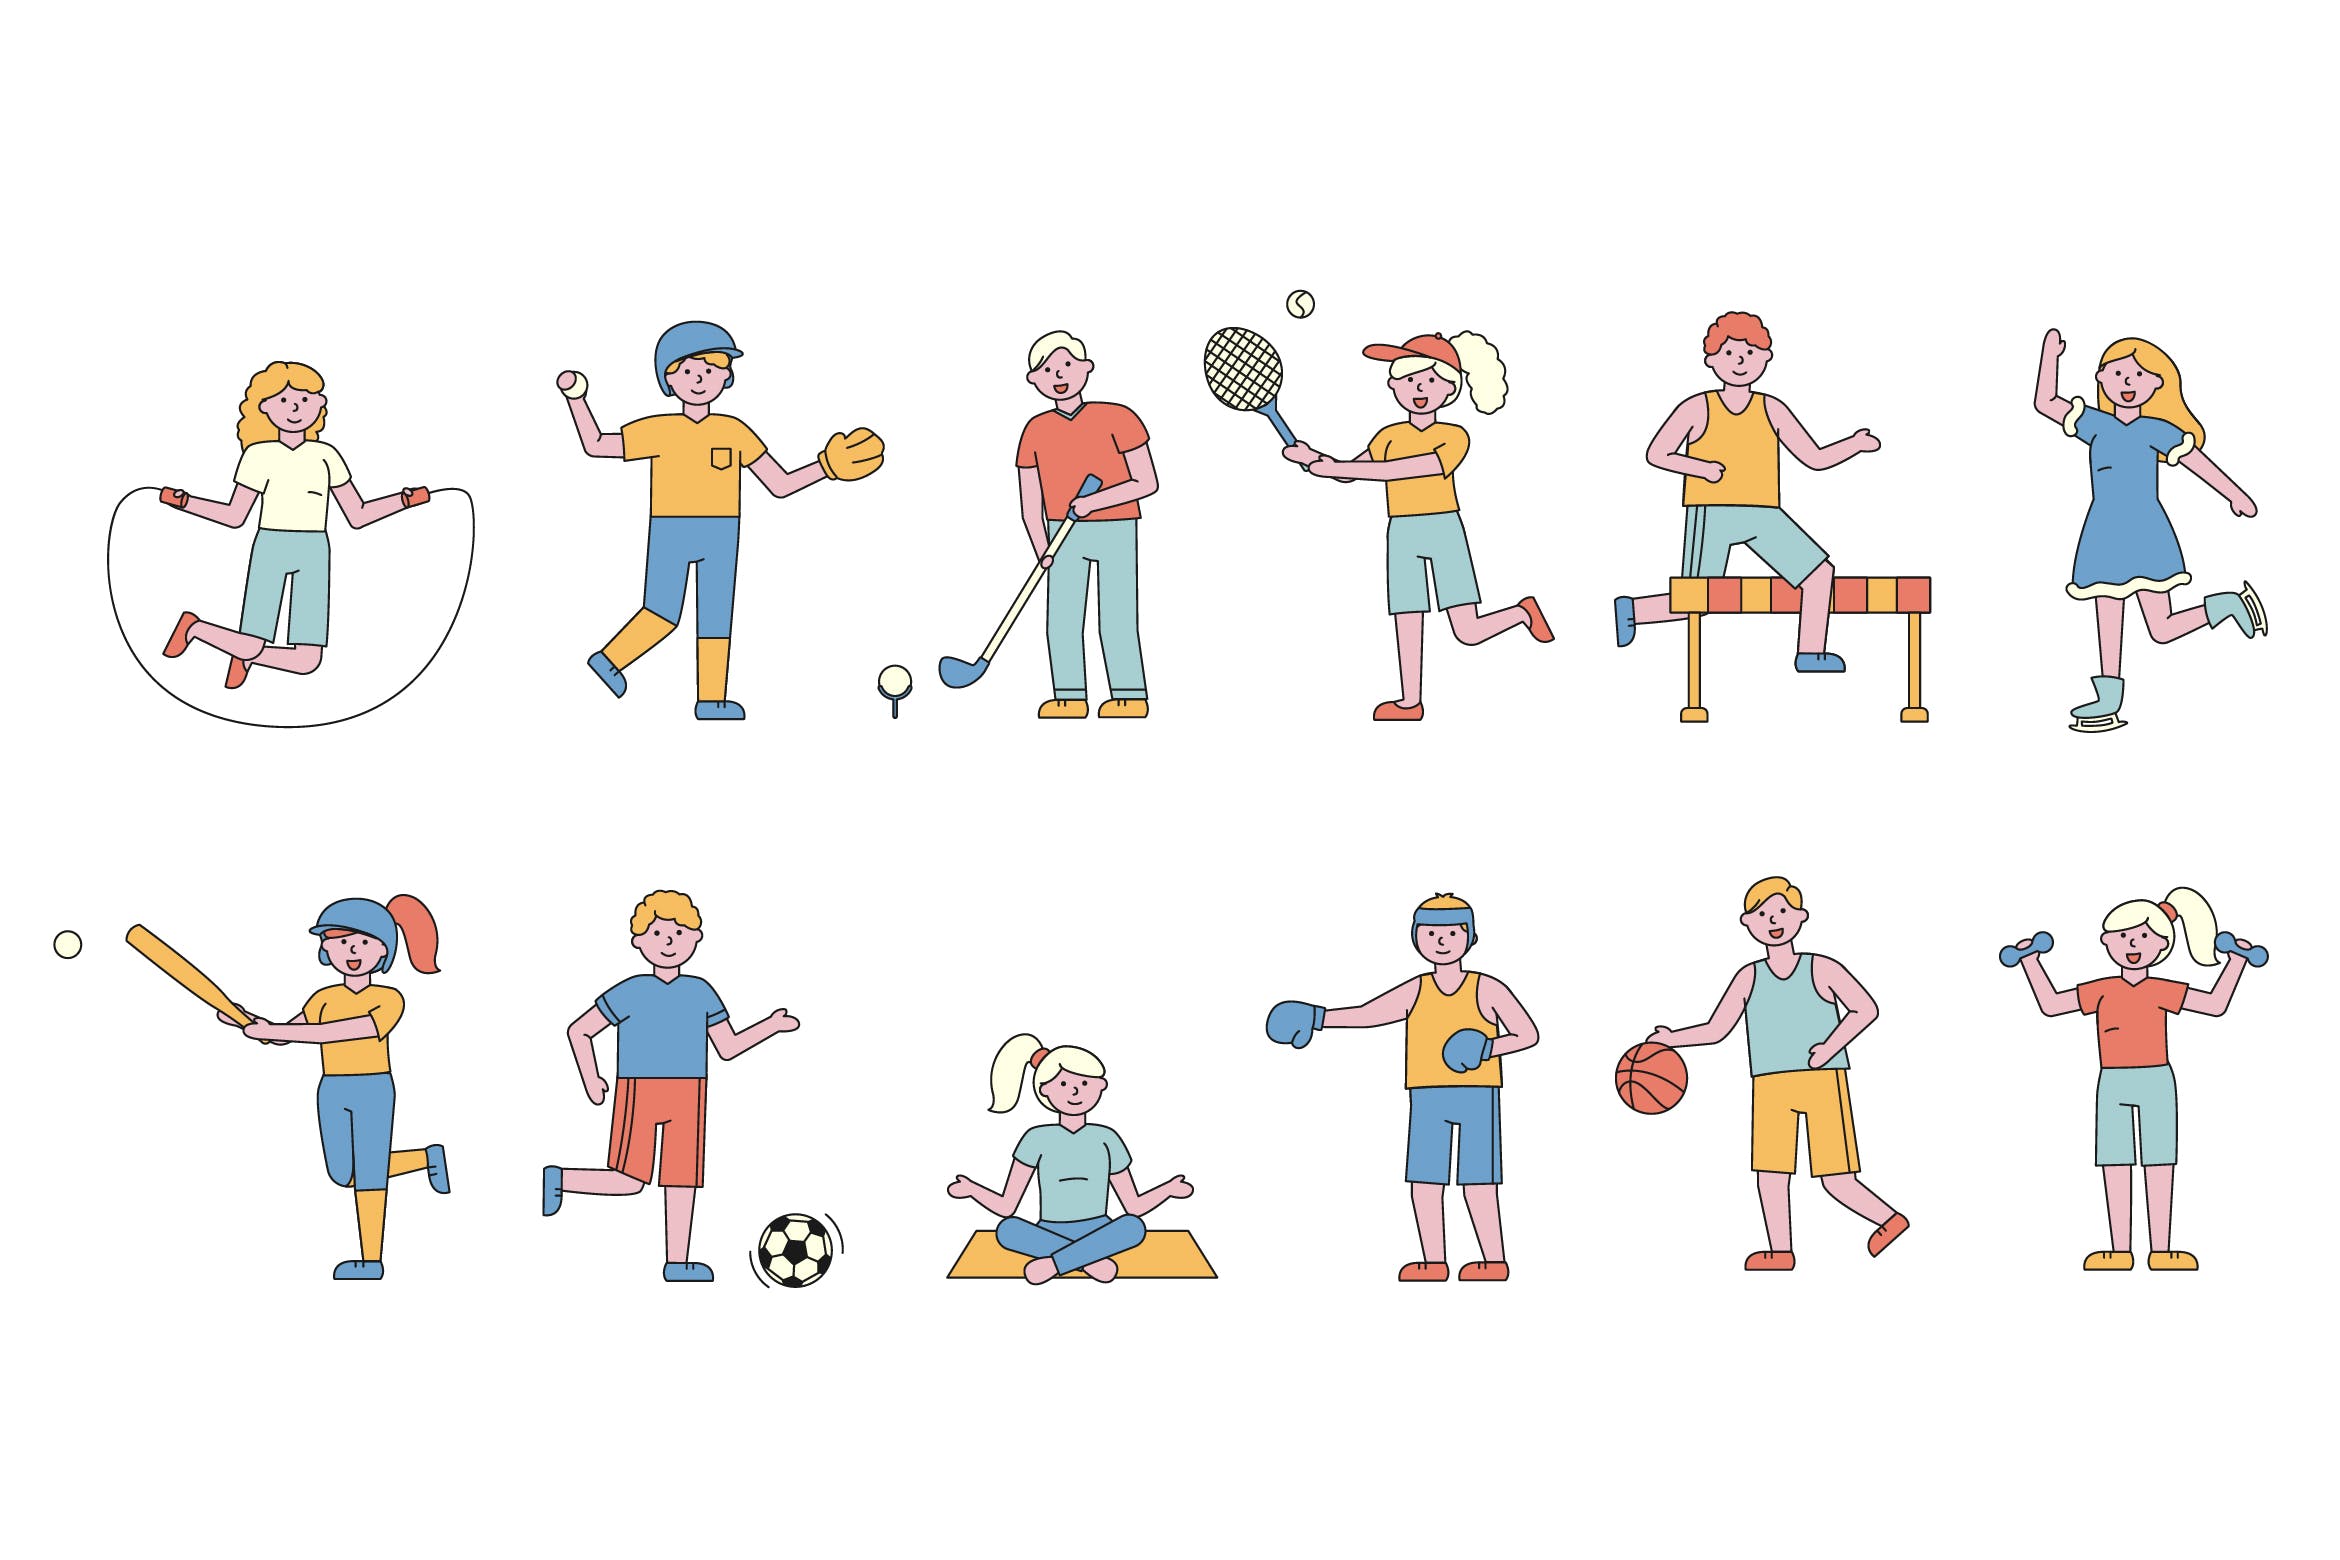 体育运动主题人物形象线条艺术矢量插画第一素材精选素材 Sportsmen Lineart People Character Collection插图